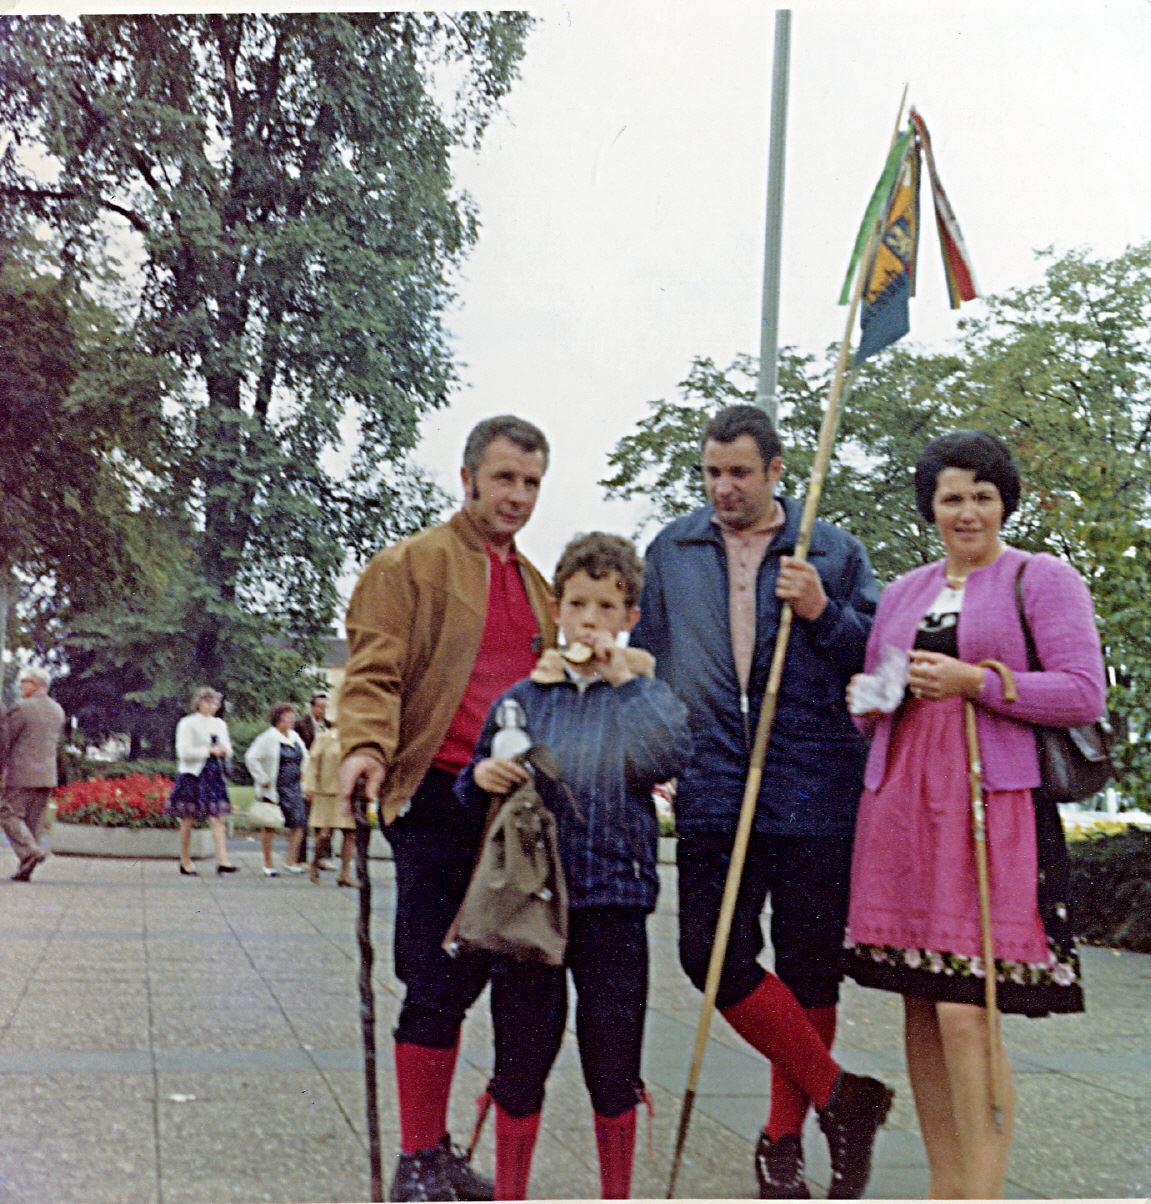 1972 - Deutscher Wandertag in Siegen